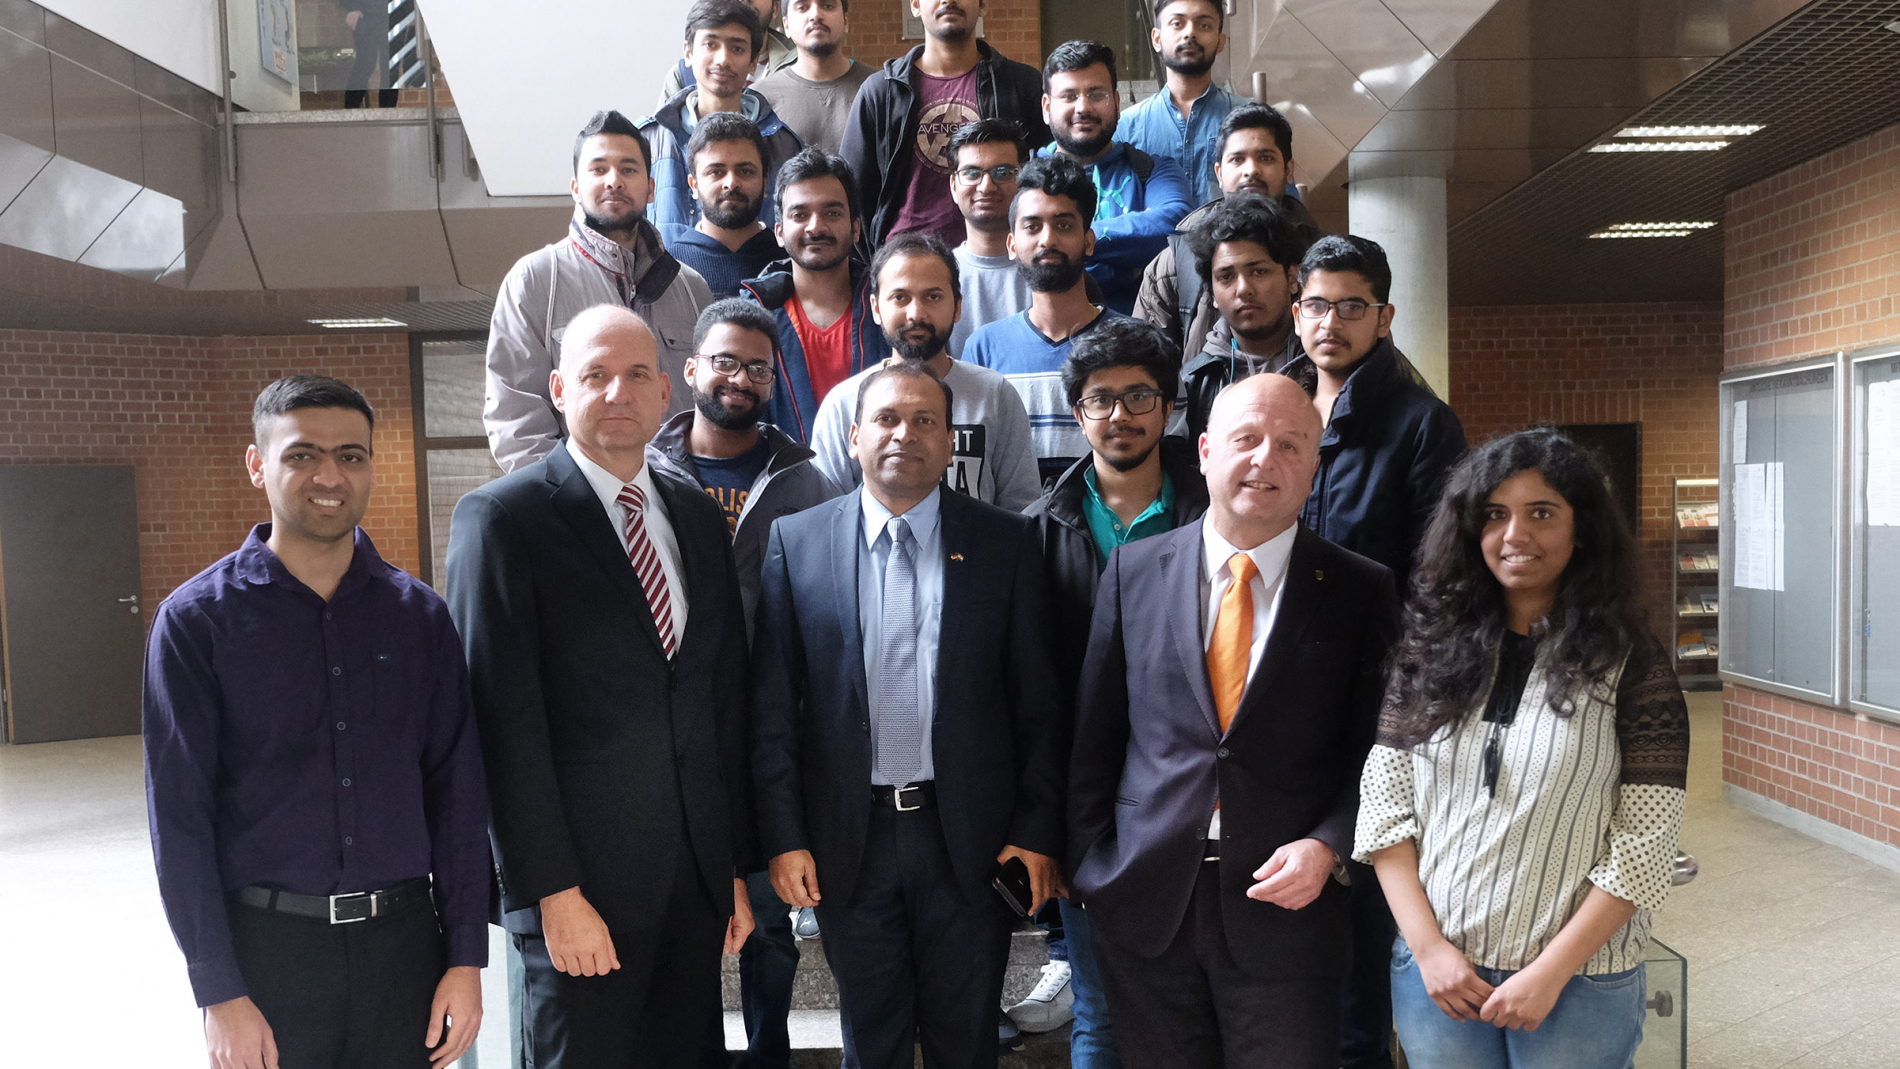 Der indische Generalkonsul steht zusammmen mit dem Rektor der Hochschule Ravensburg-Weingarten, dem Professor Dr. Michael Pfeffer und zahlreichen indischen Studierenden an der Treppe im Foyer des Hauptgebäudes.